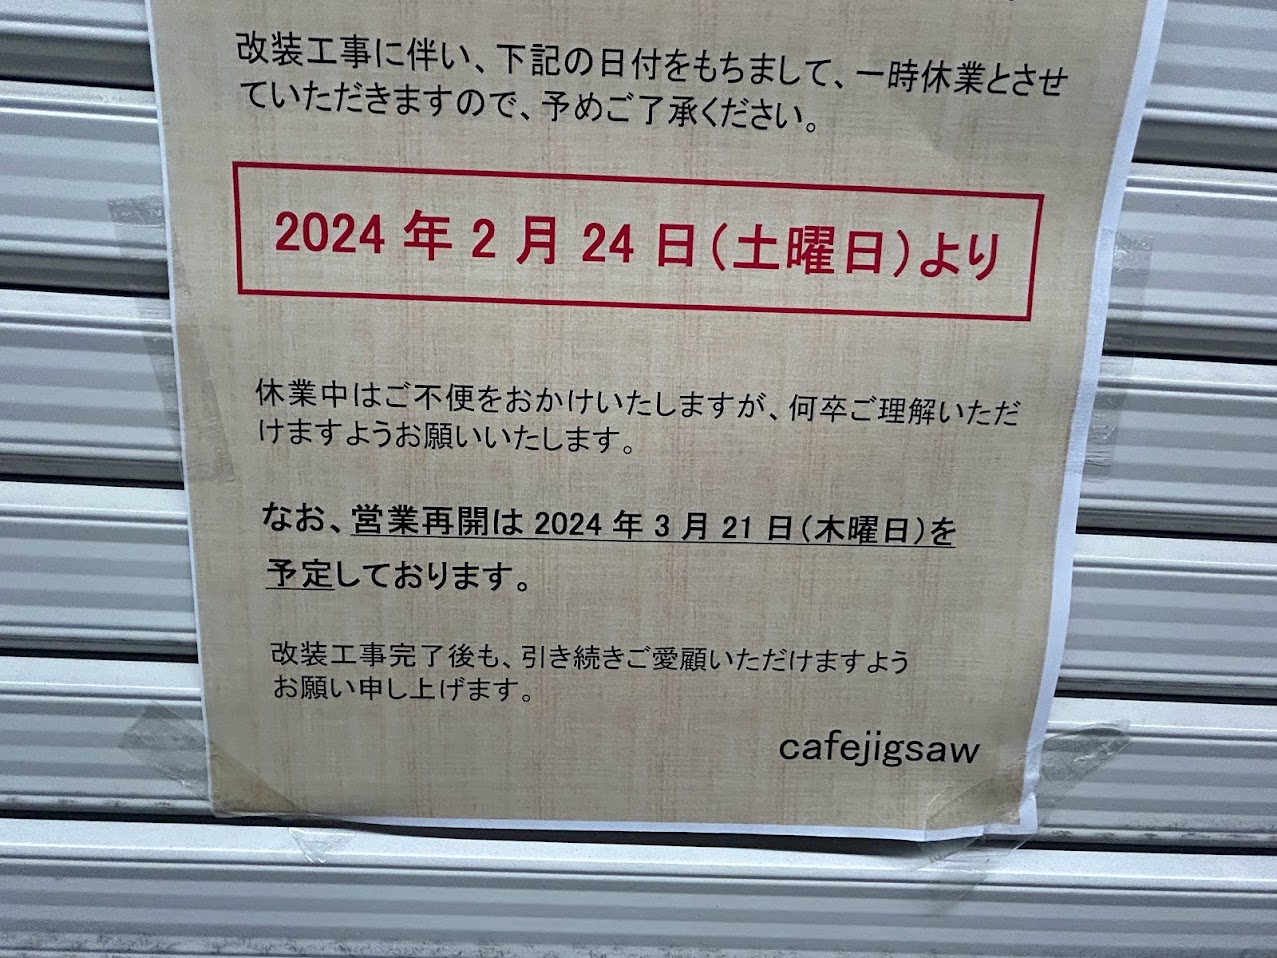 カフェジグソー店舗改装のお知らせ2